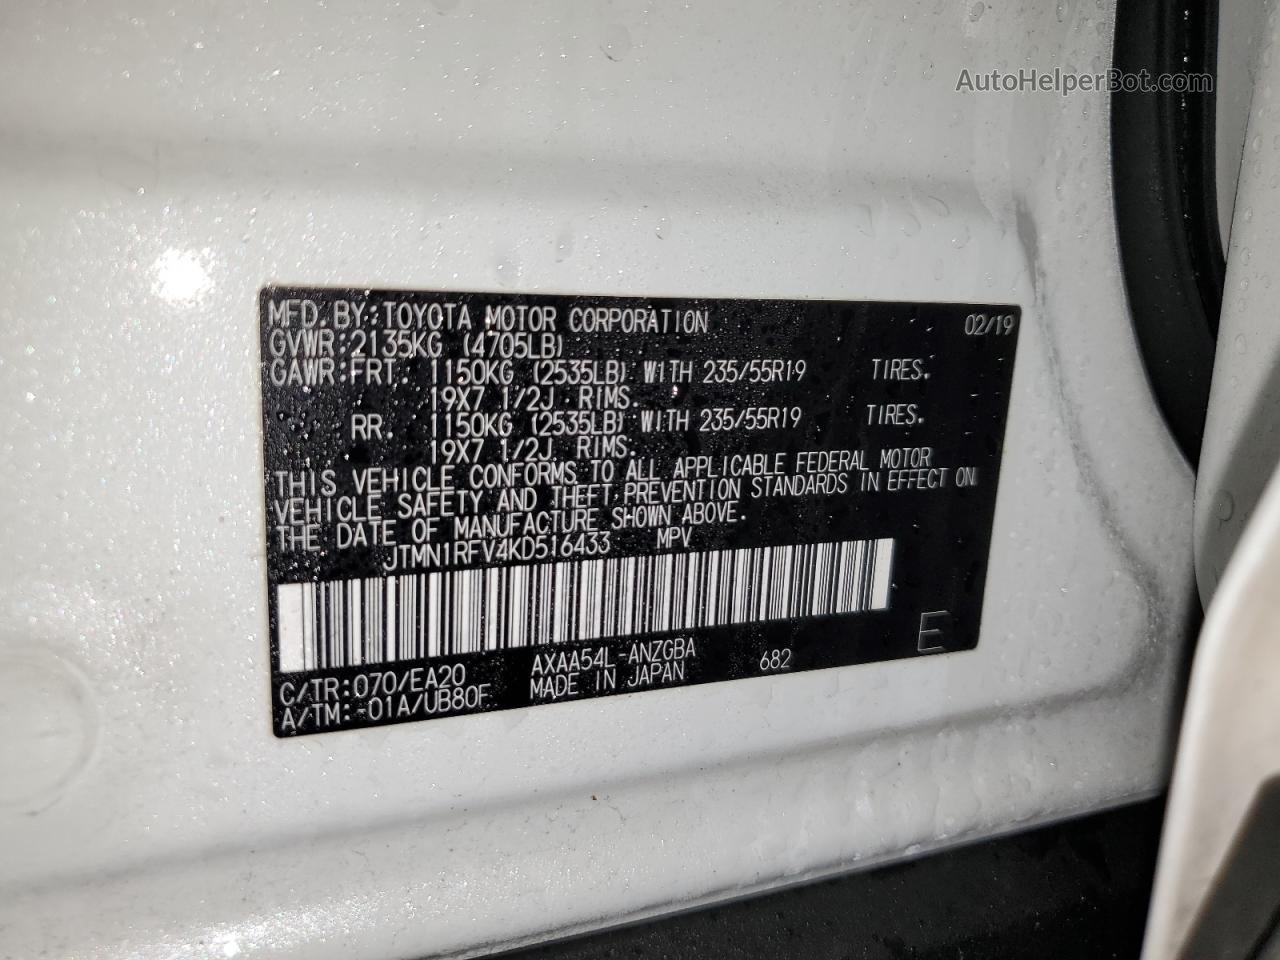 2019 Toyota Rav4 Limited White vin: JTMN1RFV4KD516433